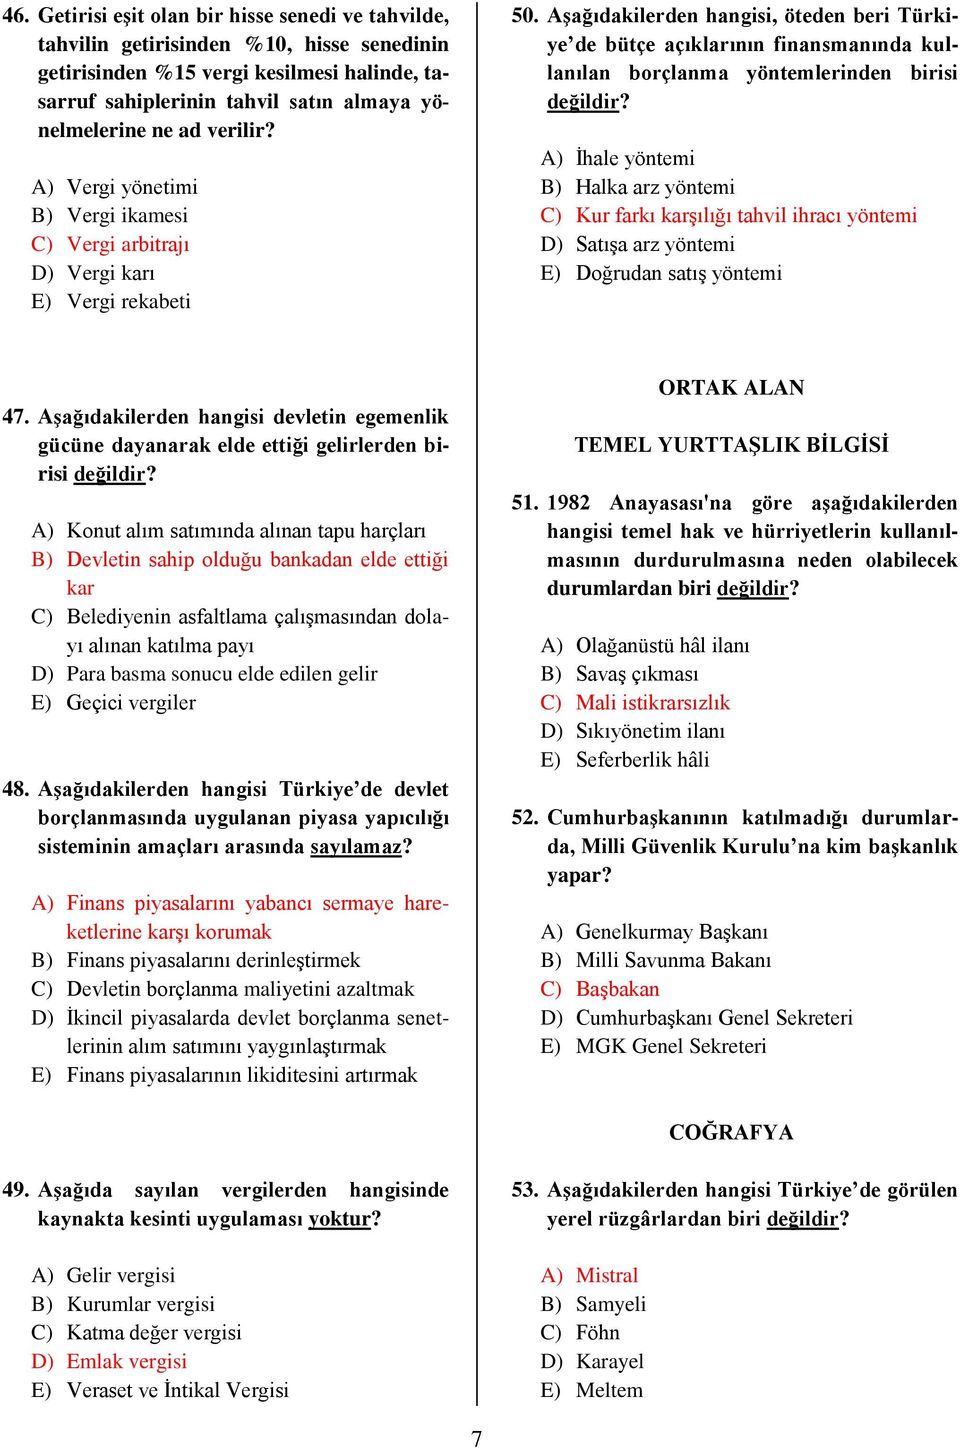 Aşağıdakilerden hangisi, öteden beri Türkiye de bütçe açıklarının finansmanında kullanılan borçlanma yöntemlerinden birisi değildir?